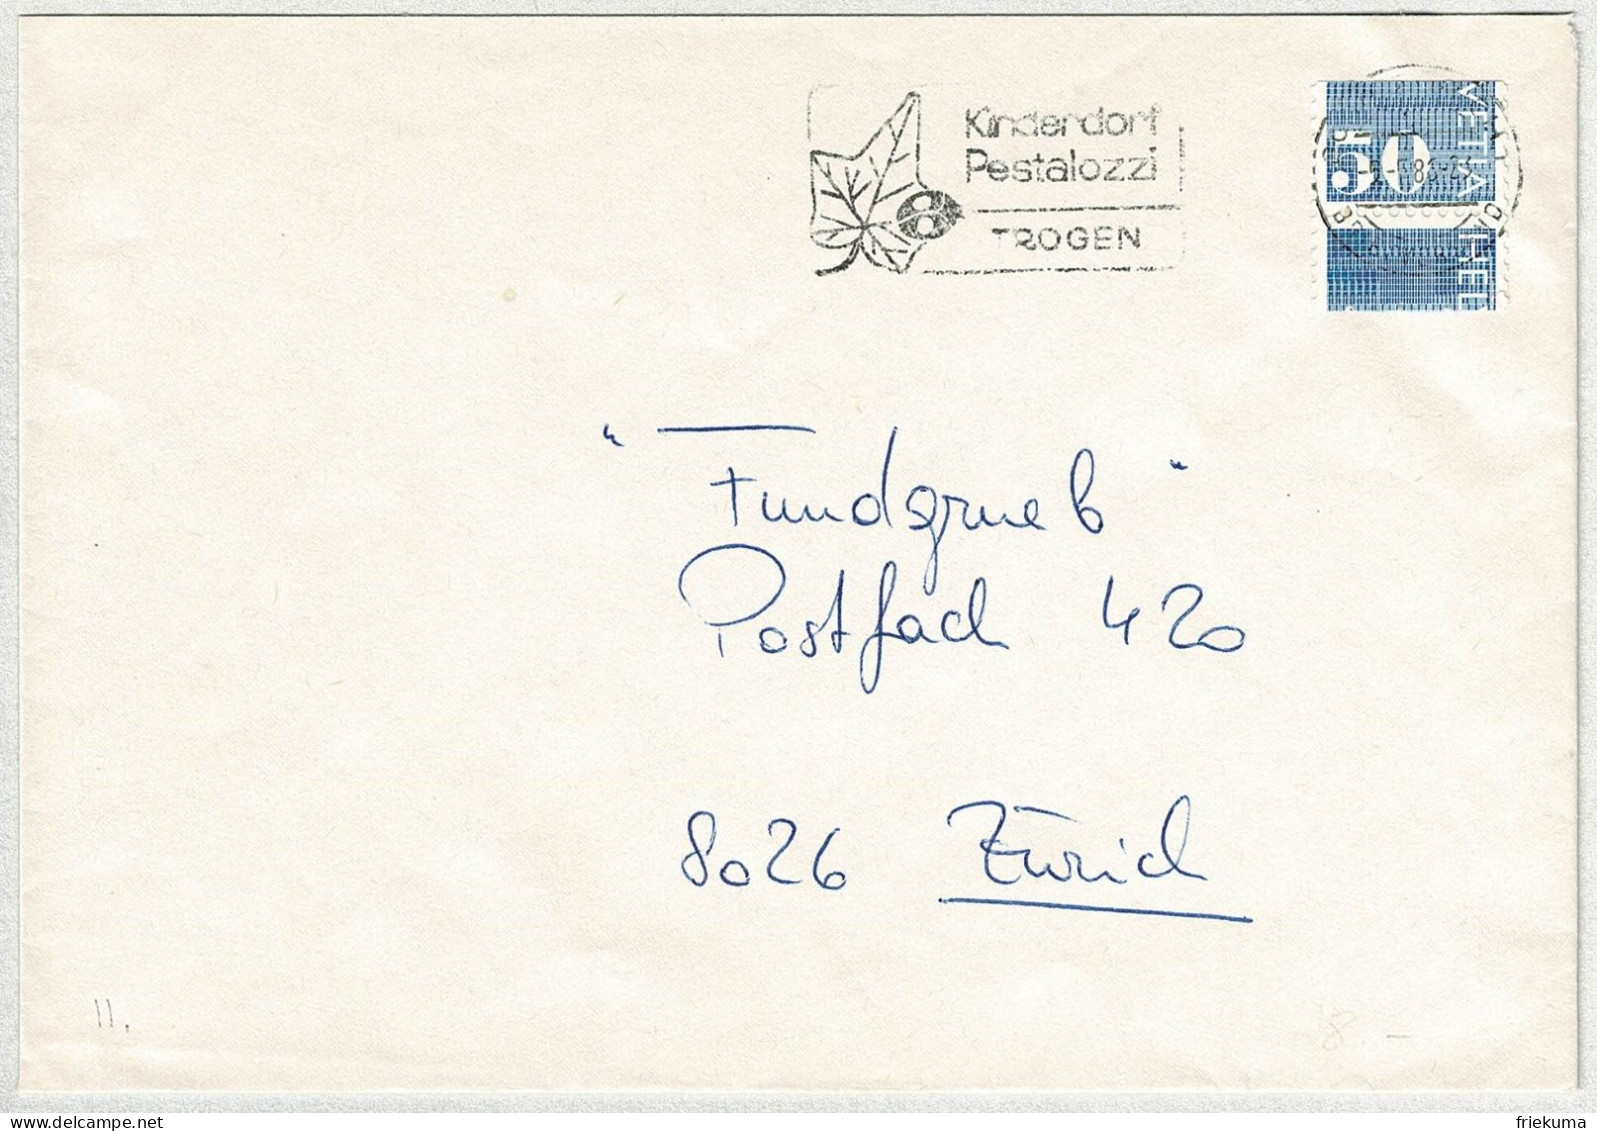 Schweiz 1986, Brief Zürich, Automatenmarke Ziffermarken Verschnitten / Error, Kinderdorf Pestalozzi Trogen, Marienkäfer - Automatic Stamps